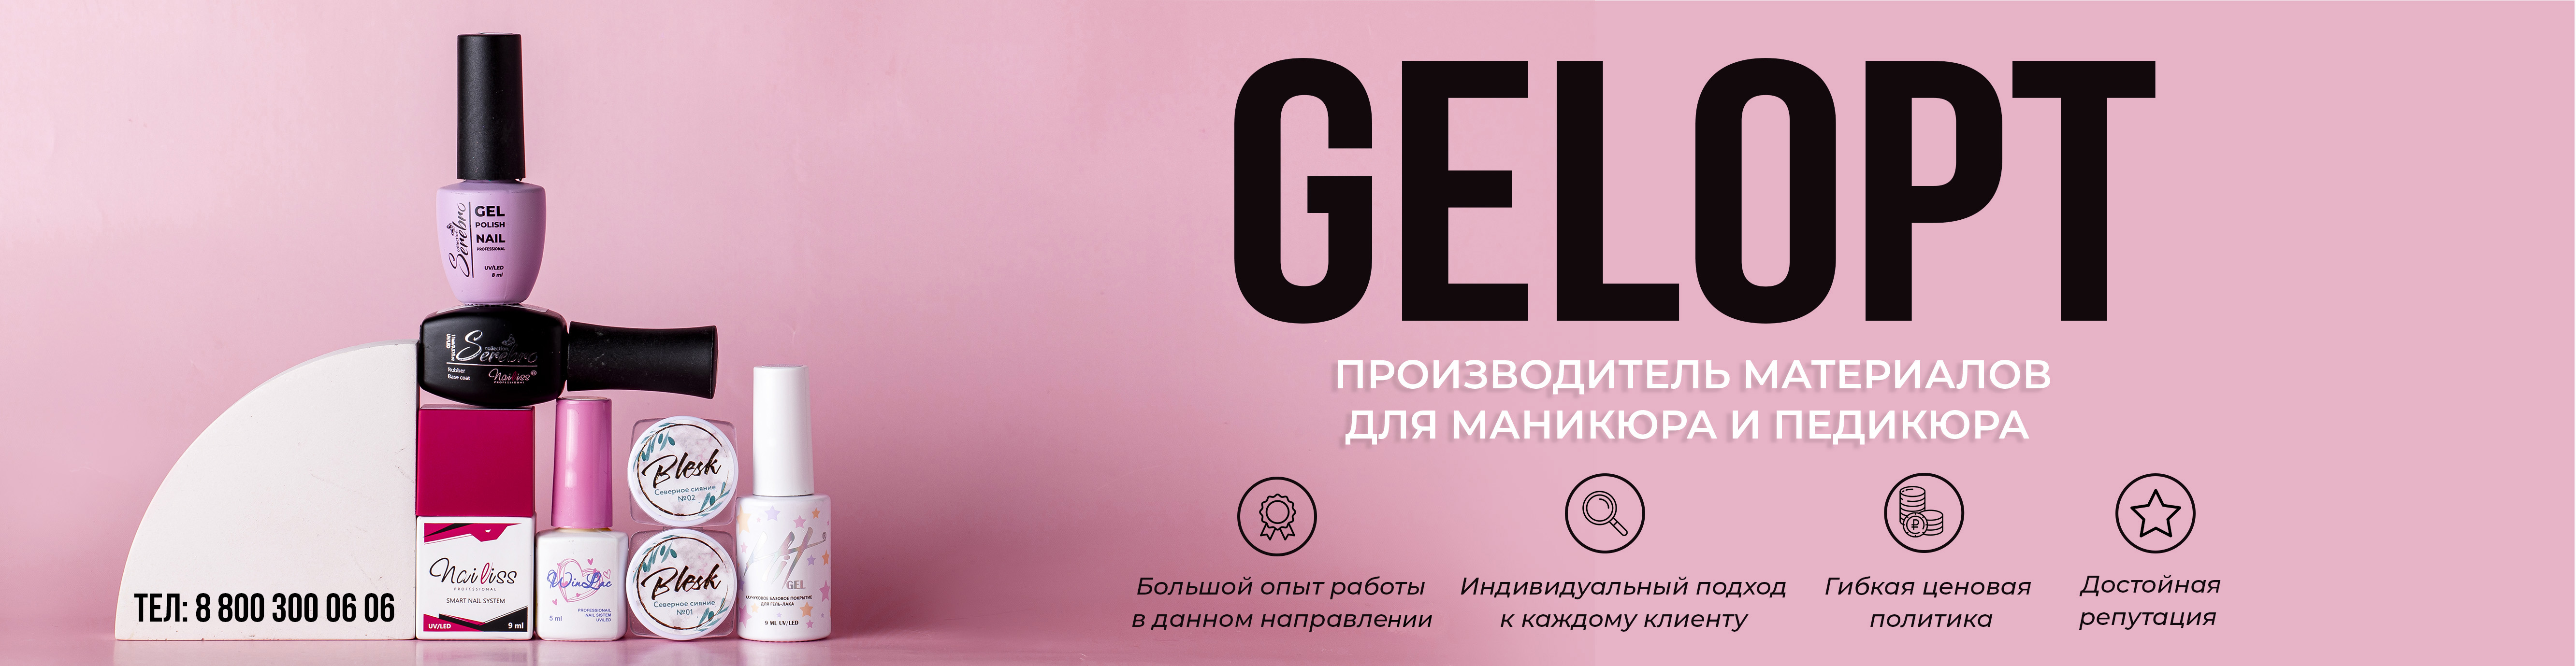 Интернет-магазин ногтевой моды gelopt.ru